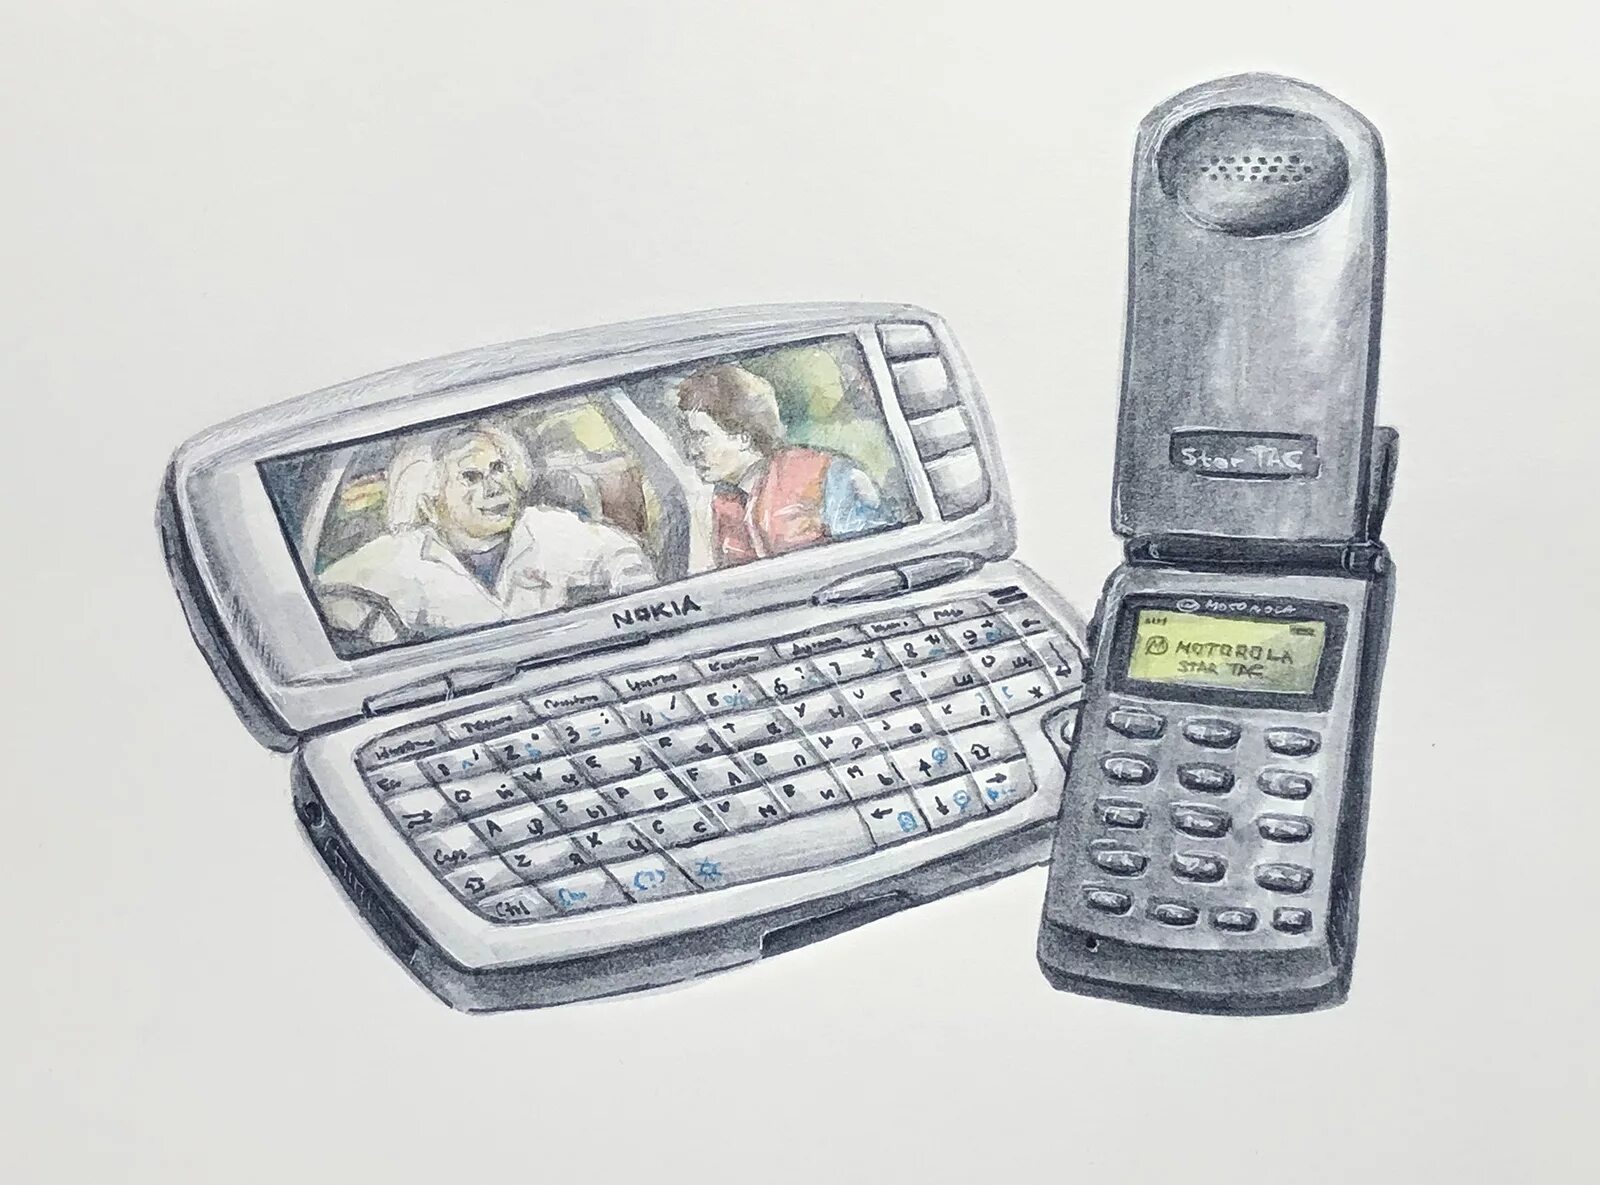 Где найти старый телефон. Старые смартфоны. Старые коммуникаторы. Мобильные телефоны 2000-х годов. Интересные старые смартфоны.